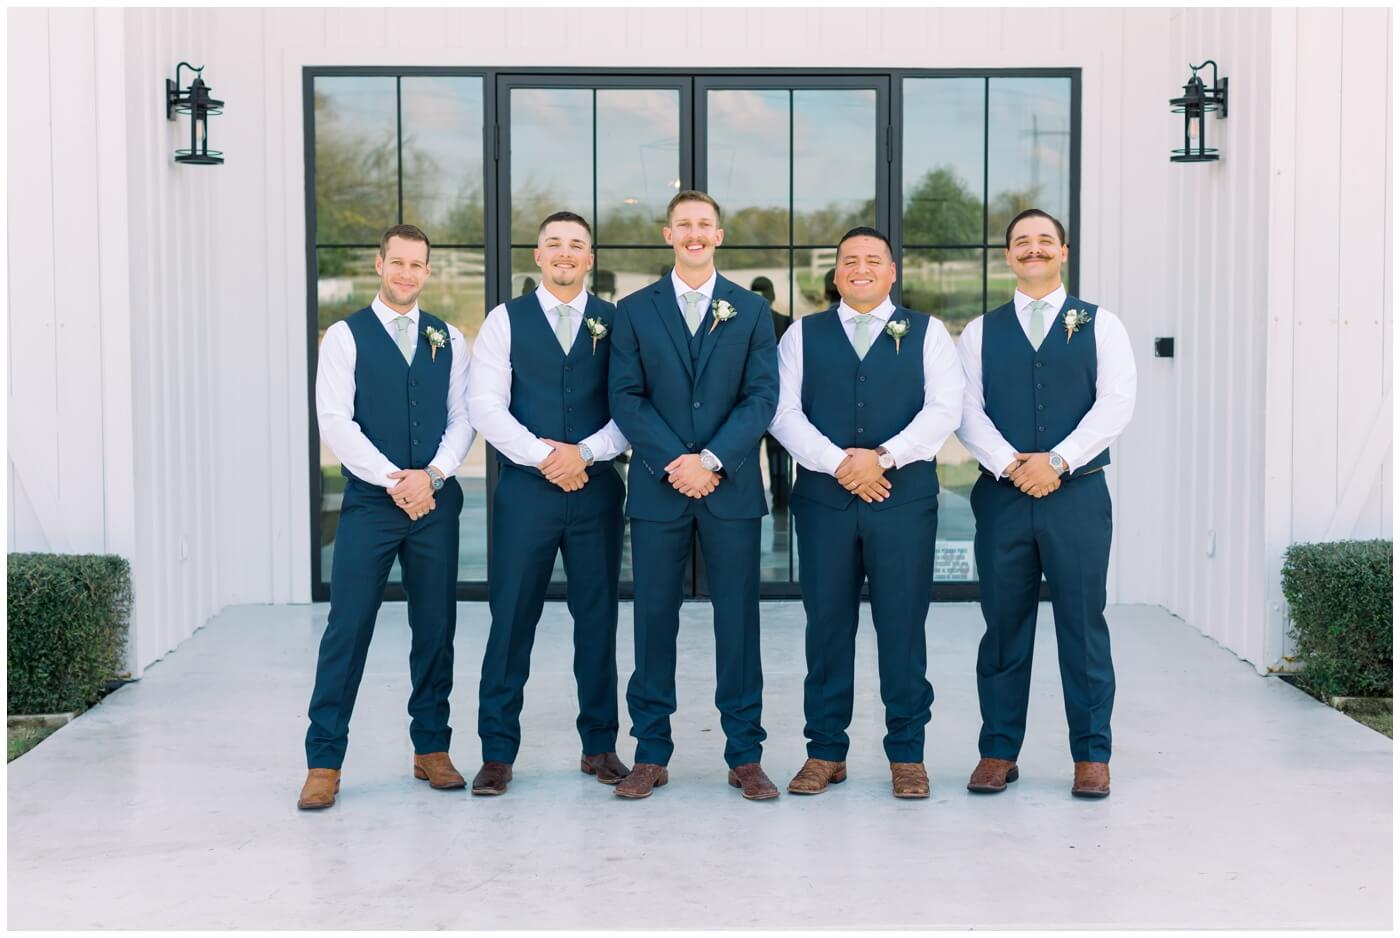 Texas farmhouse wedding | the groom smiles with his groomsmen